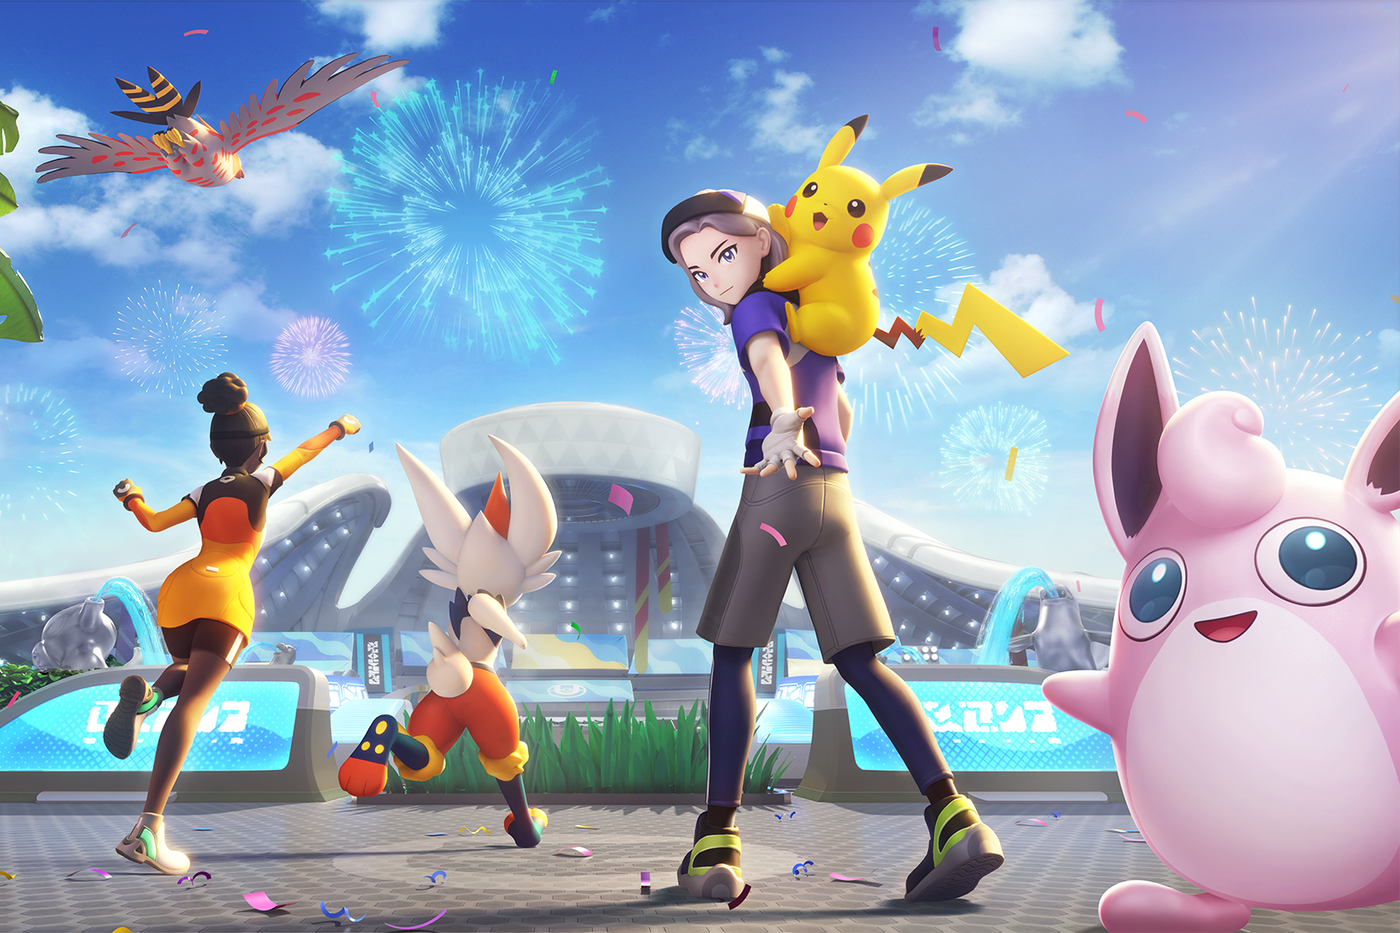 لعبة Pokémon Unite تصل إلى الهواتف الذكية في 22 سبتمبر المقبل رسميًا